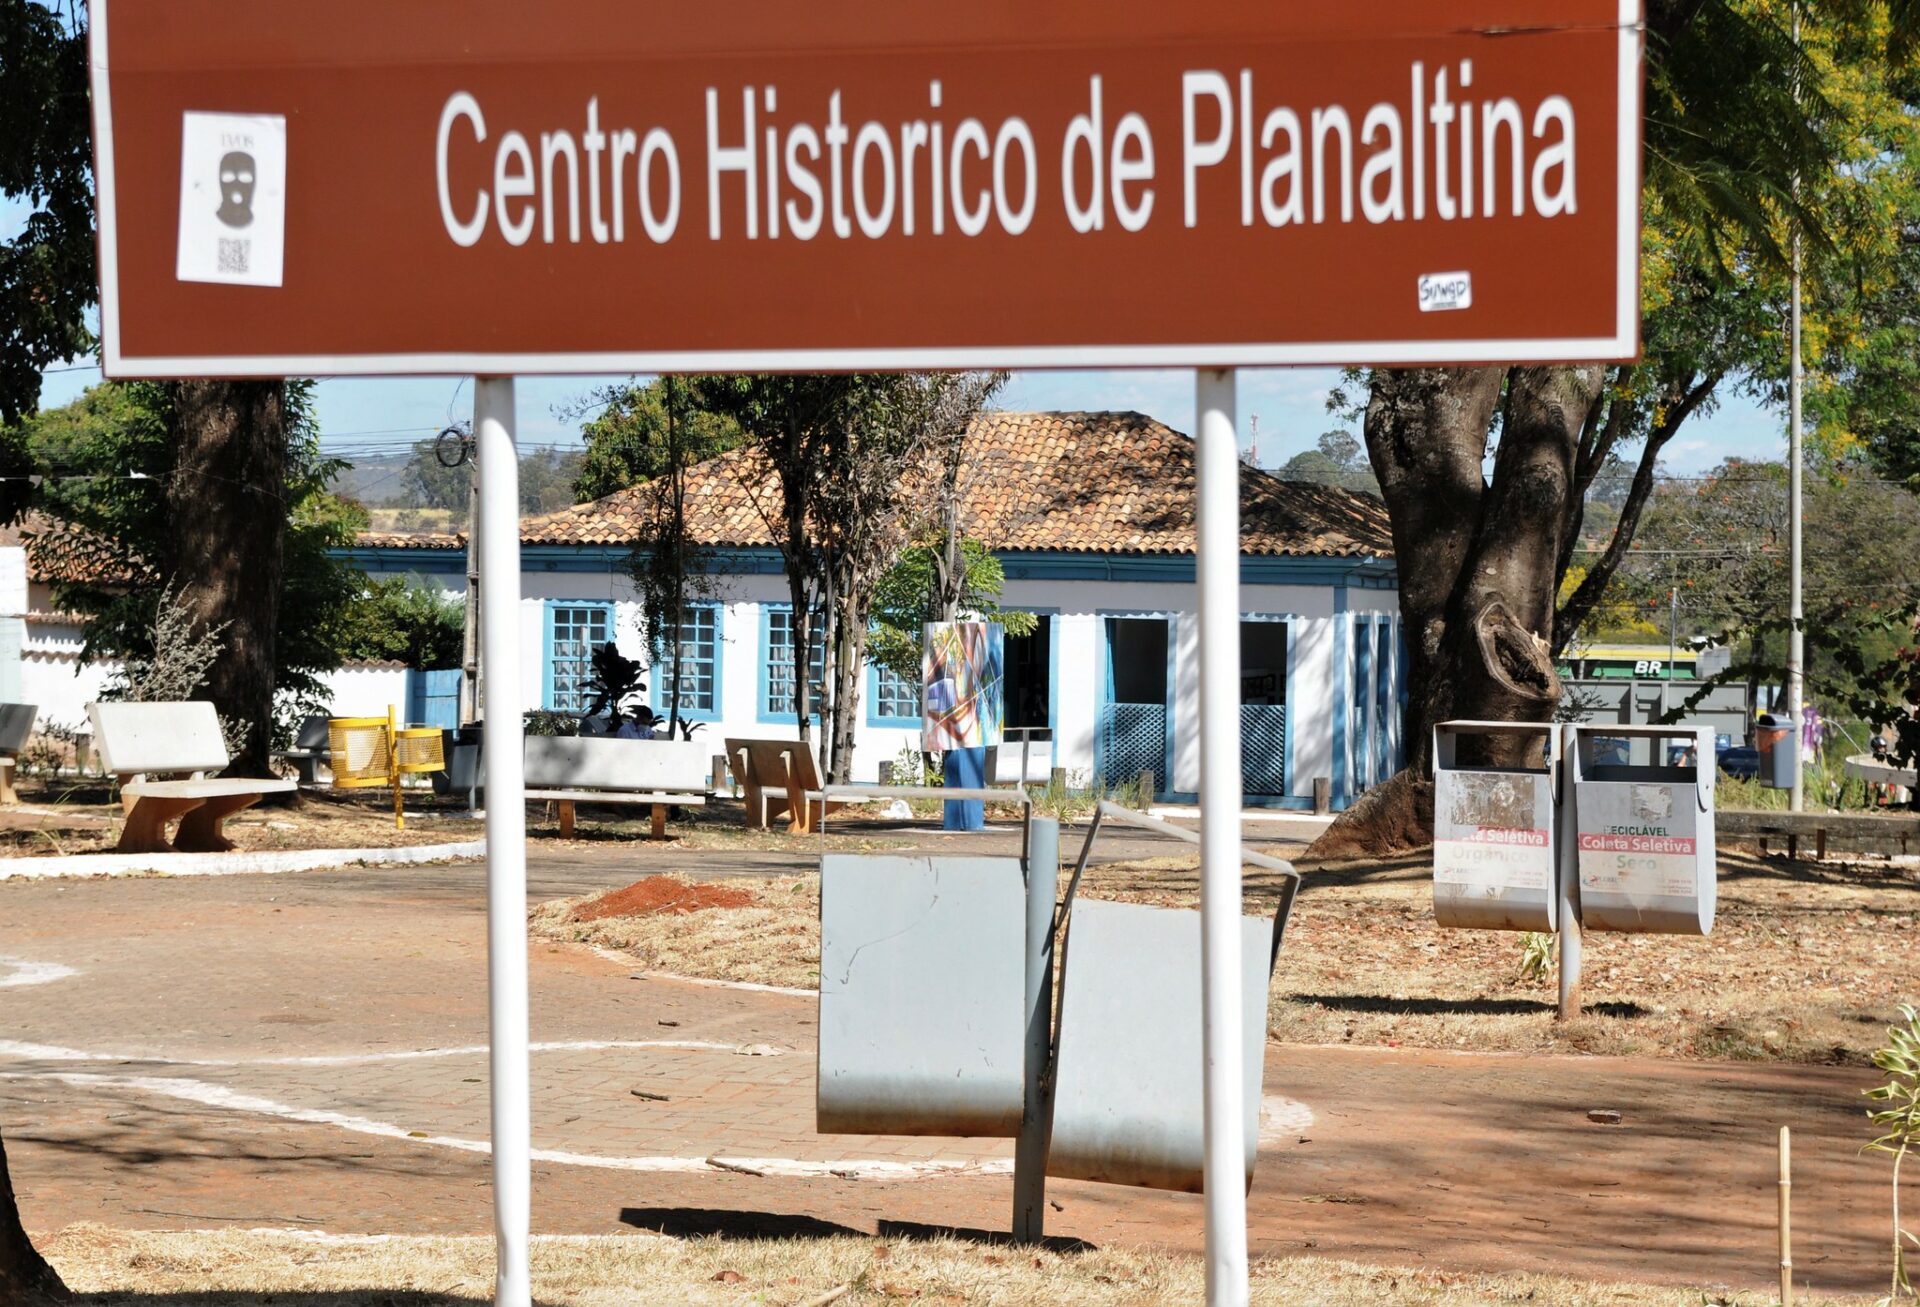 GDF aplicou a verba em obras de infraestrutura e mobilidade em Planaltina. Foto: Lúcio Bernardo Jr./Agência Brasília